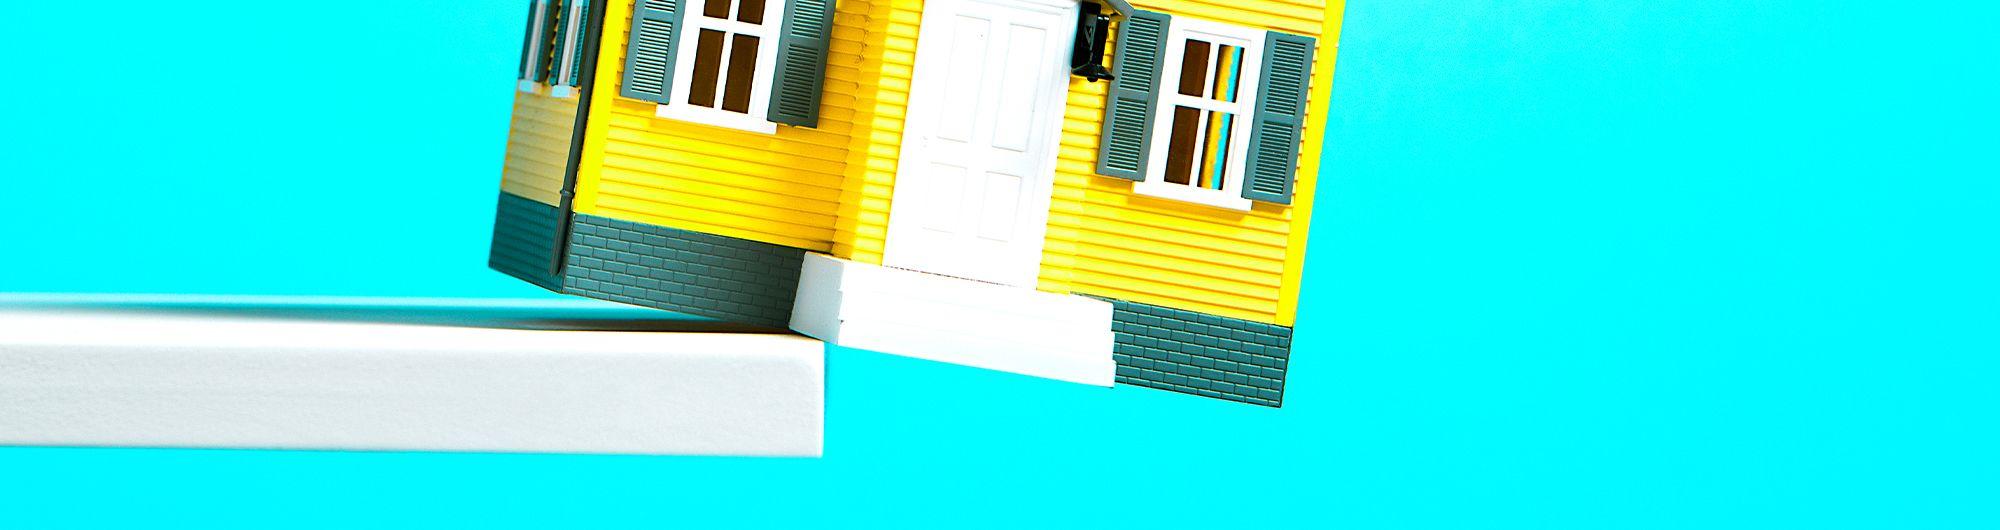 forma de casa caindo de plataforma em fundo azul